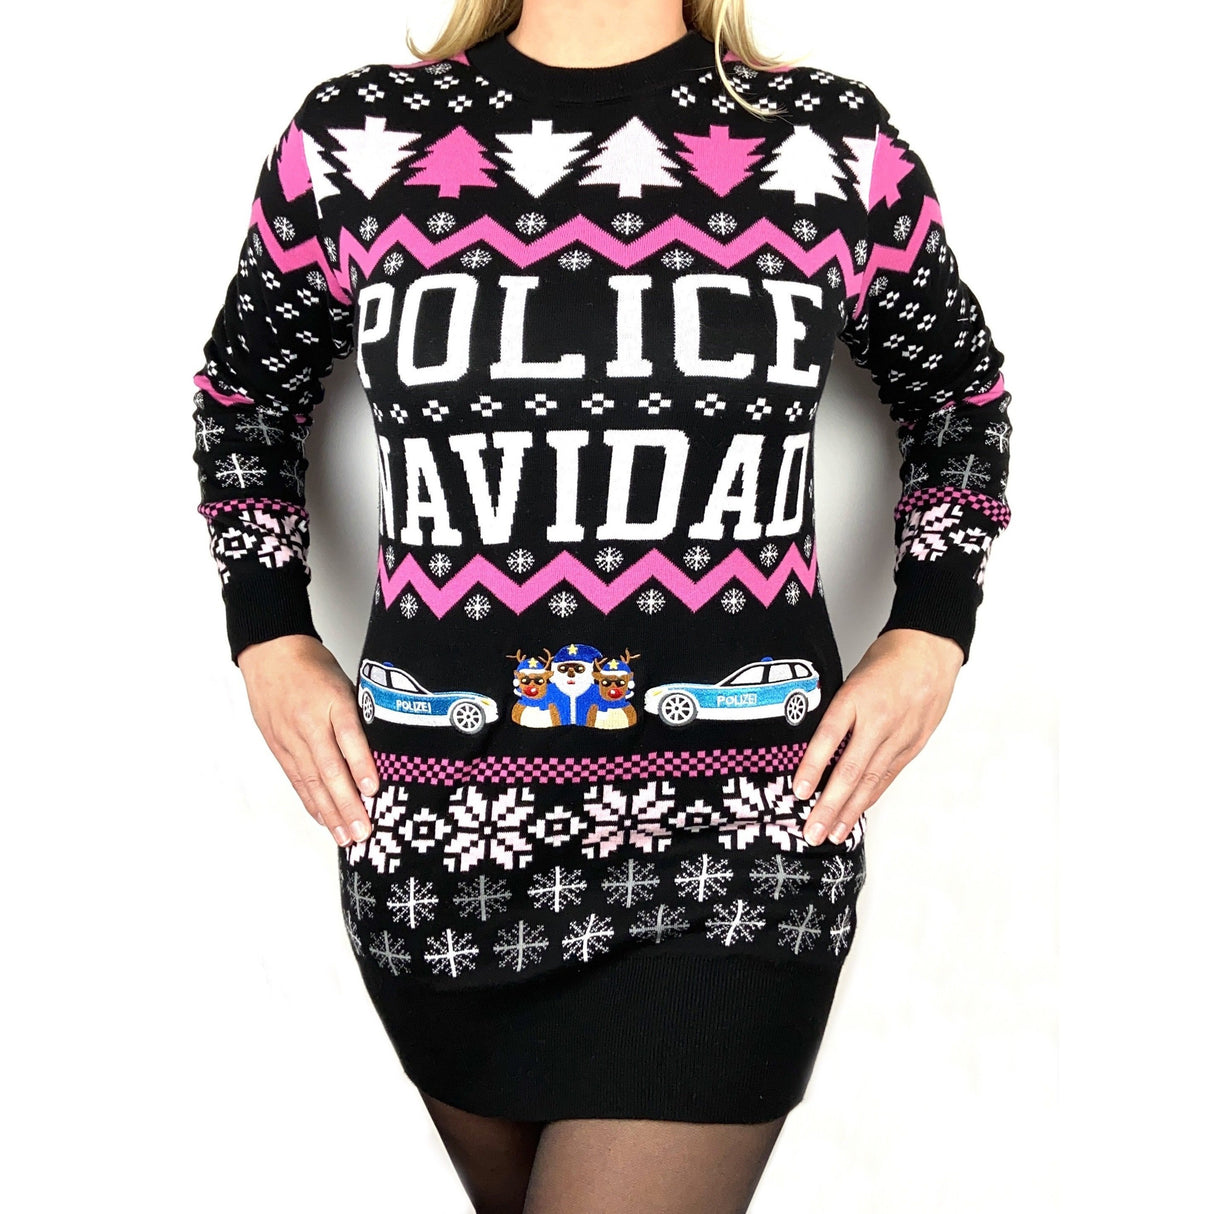 Pink Police Navidad Xmas sweater dress